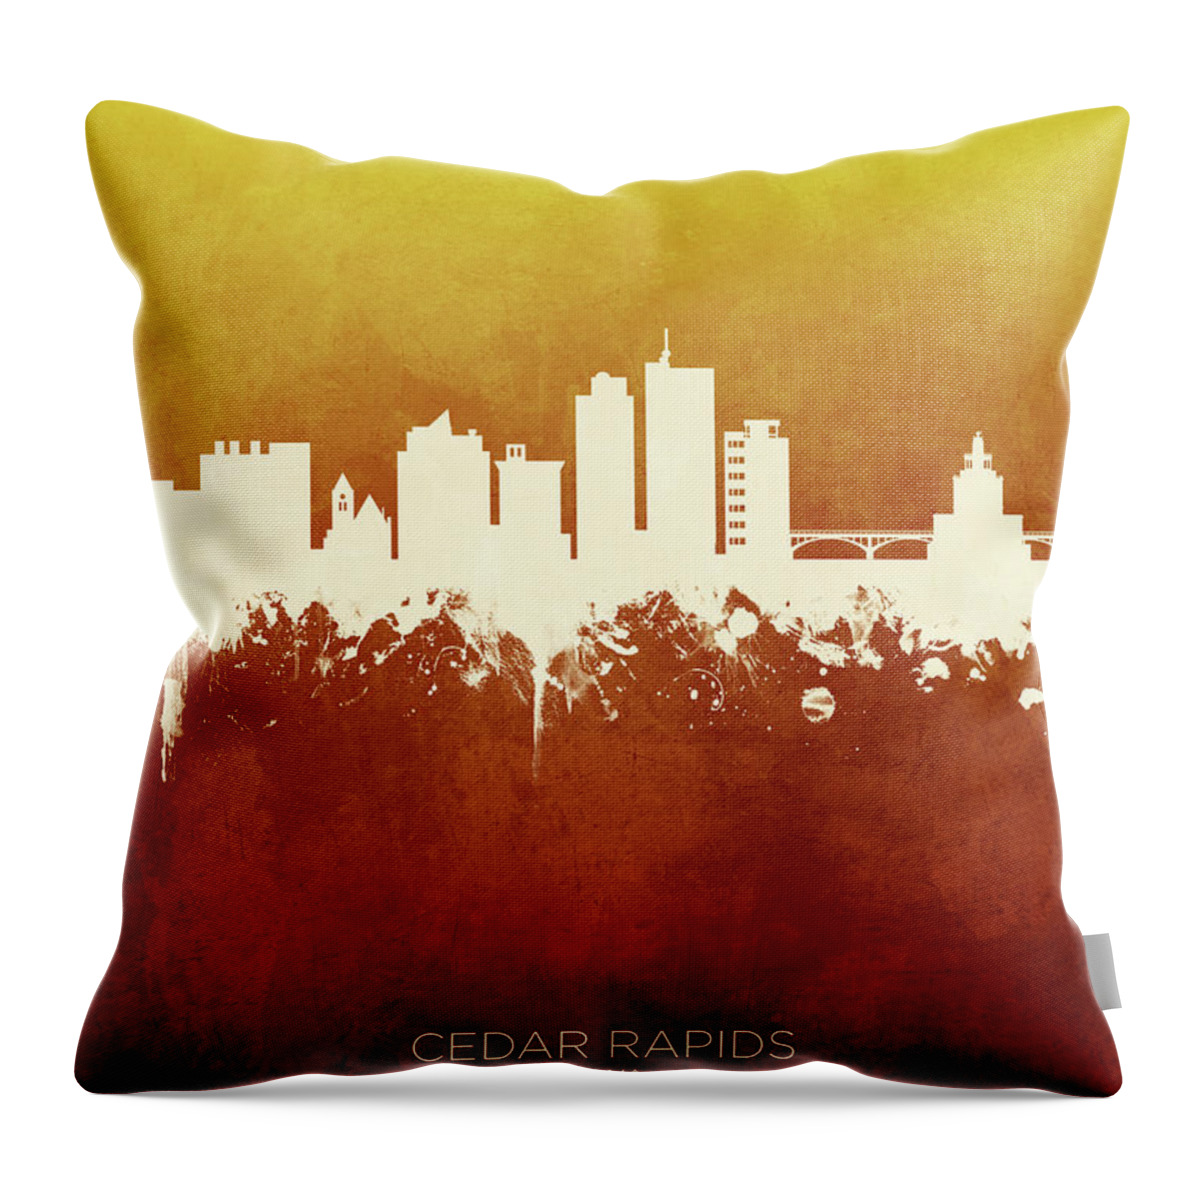 Cedar Rapids Throw Pillow featuring the digital art Cedar Rapids Iowa Skyline #17 by Michael Tompsett